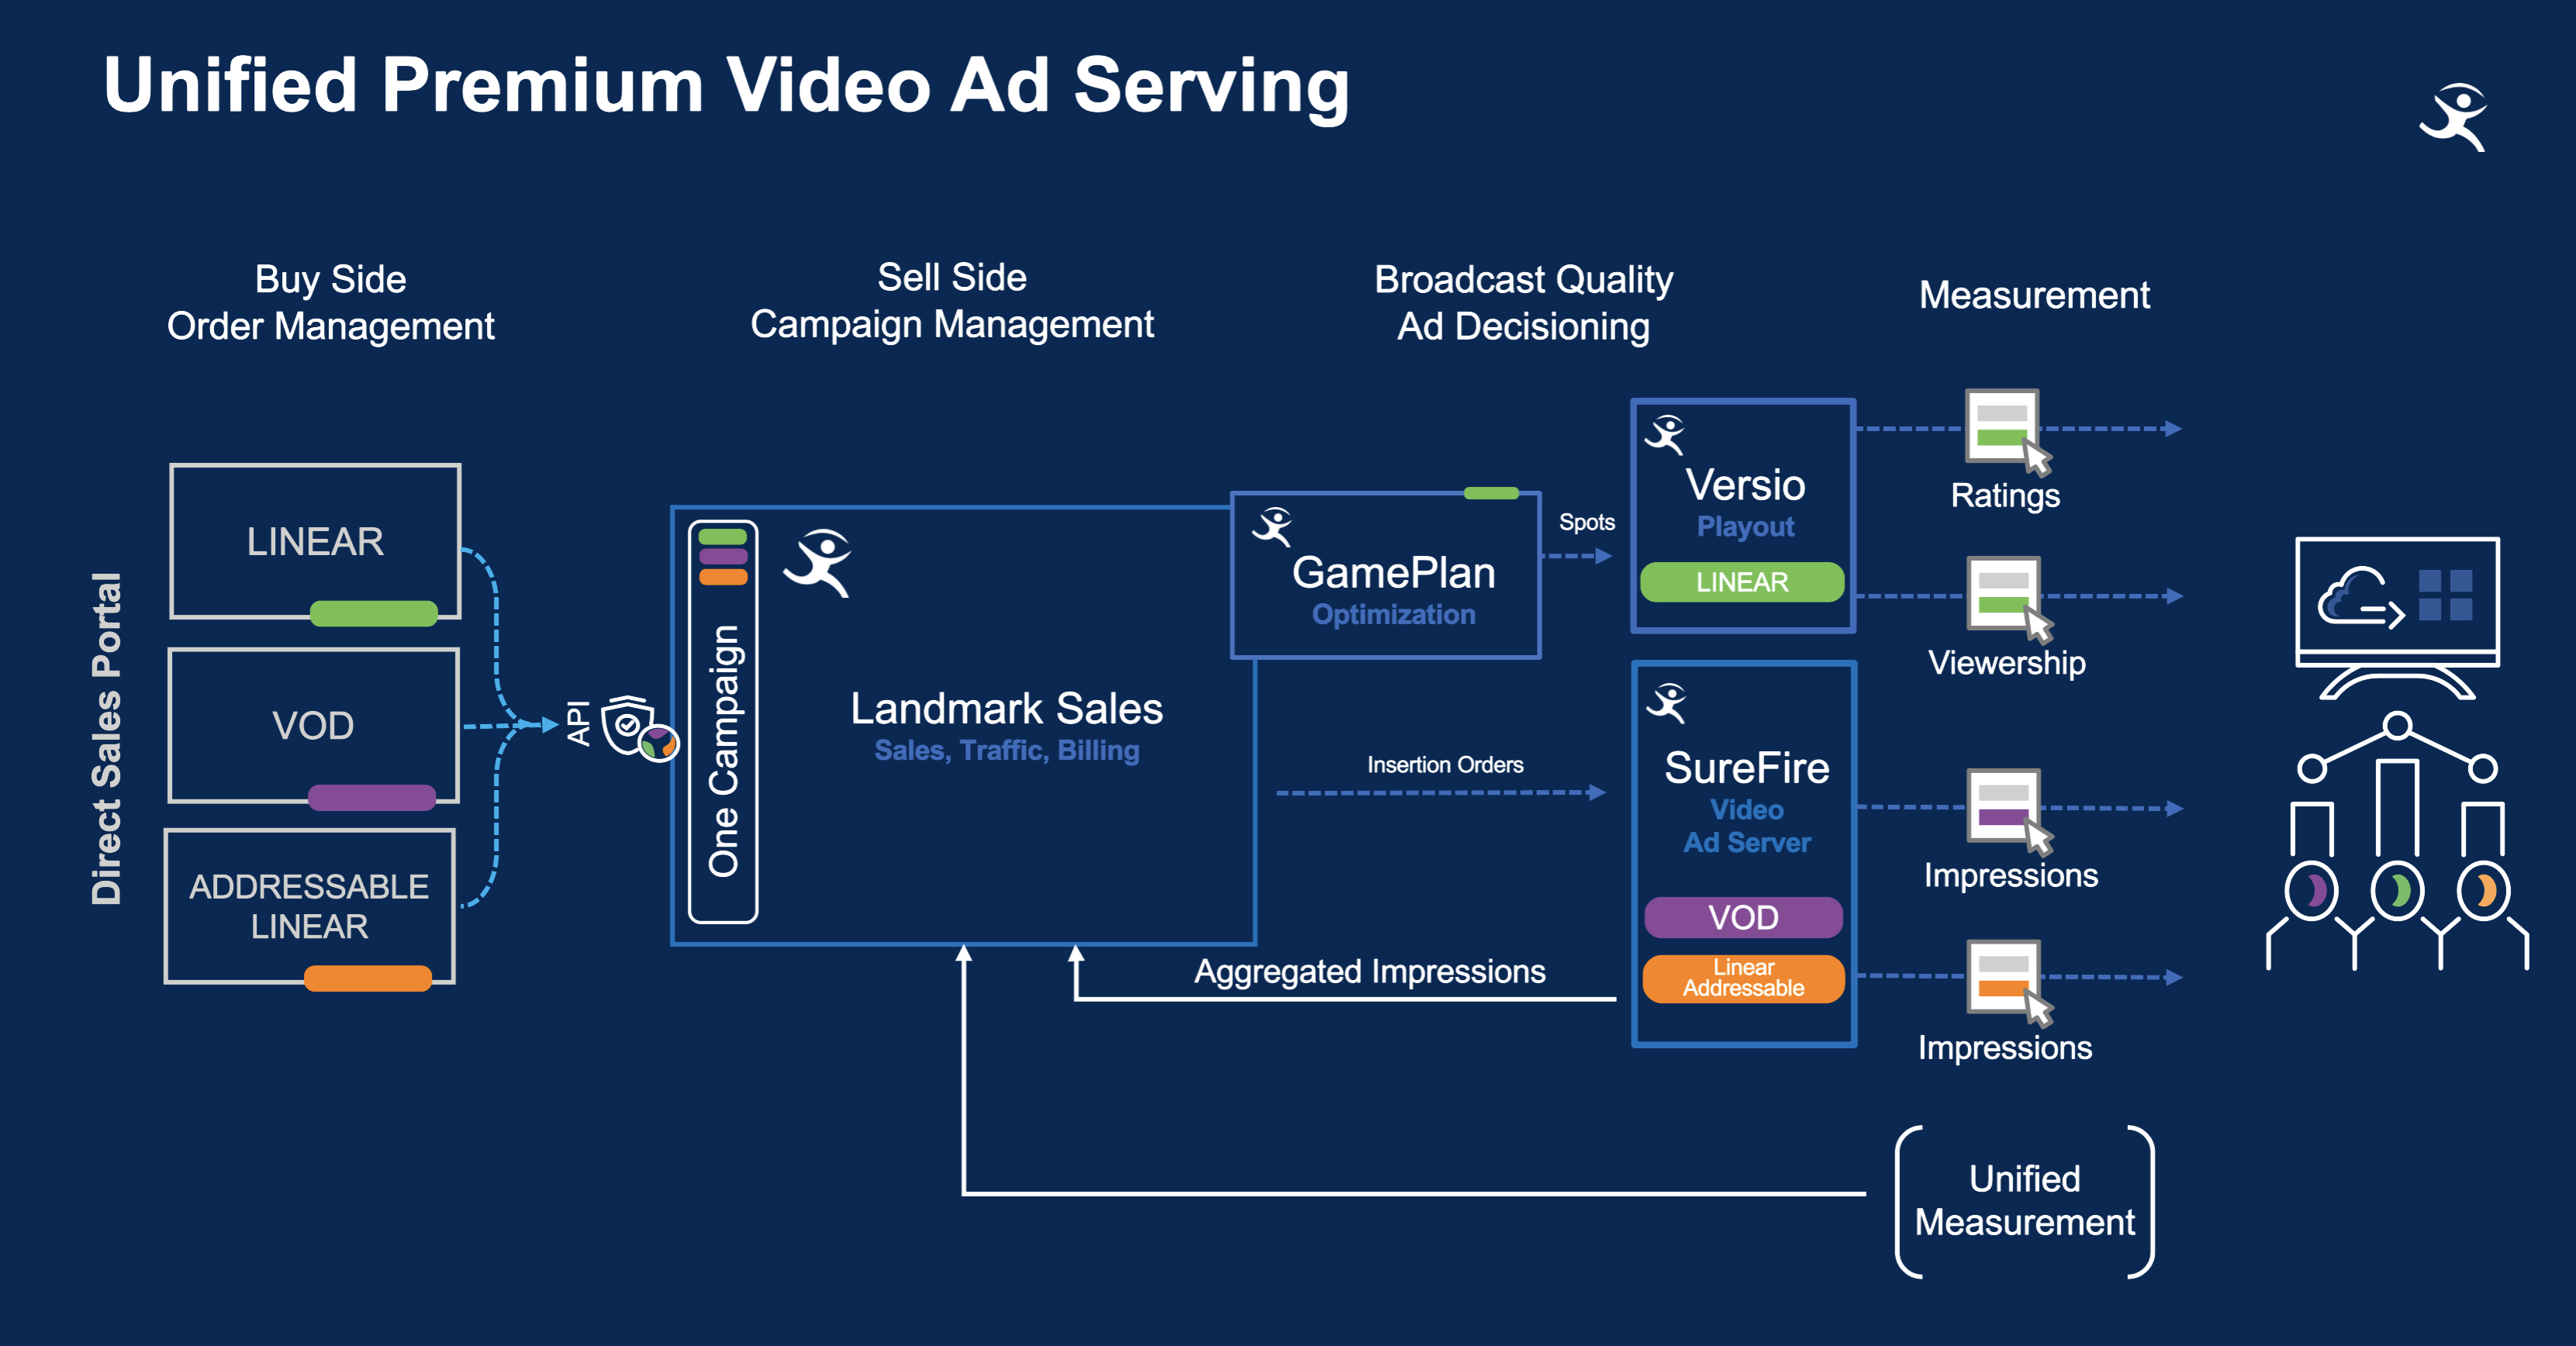 Imagine Unified Premium Video Ad Serving